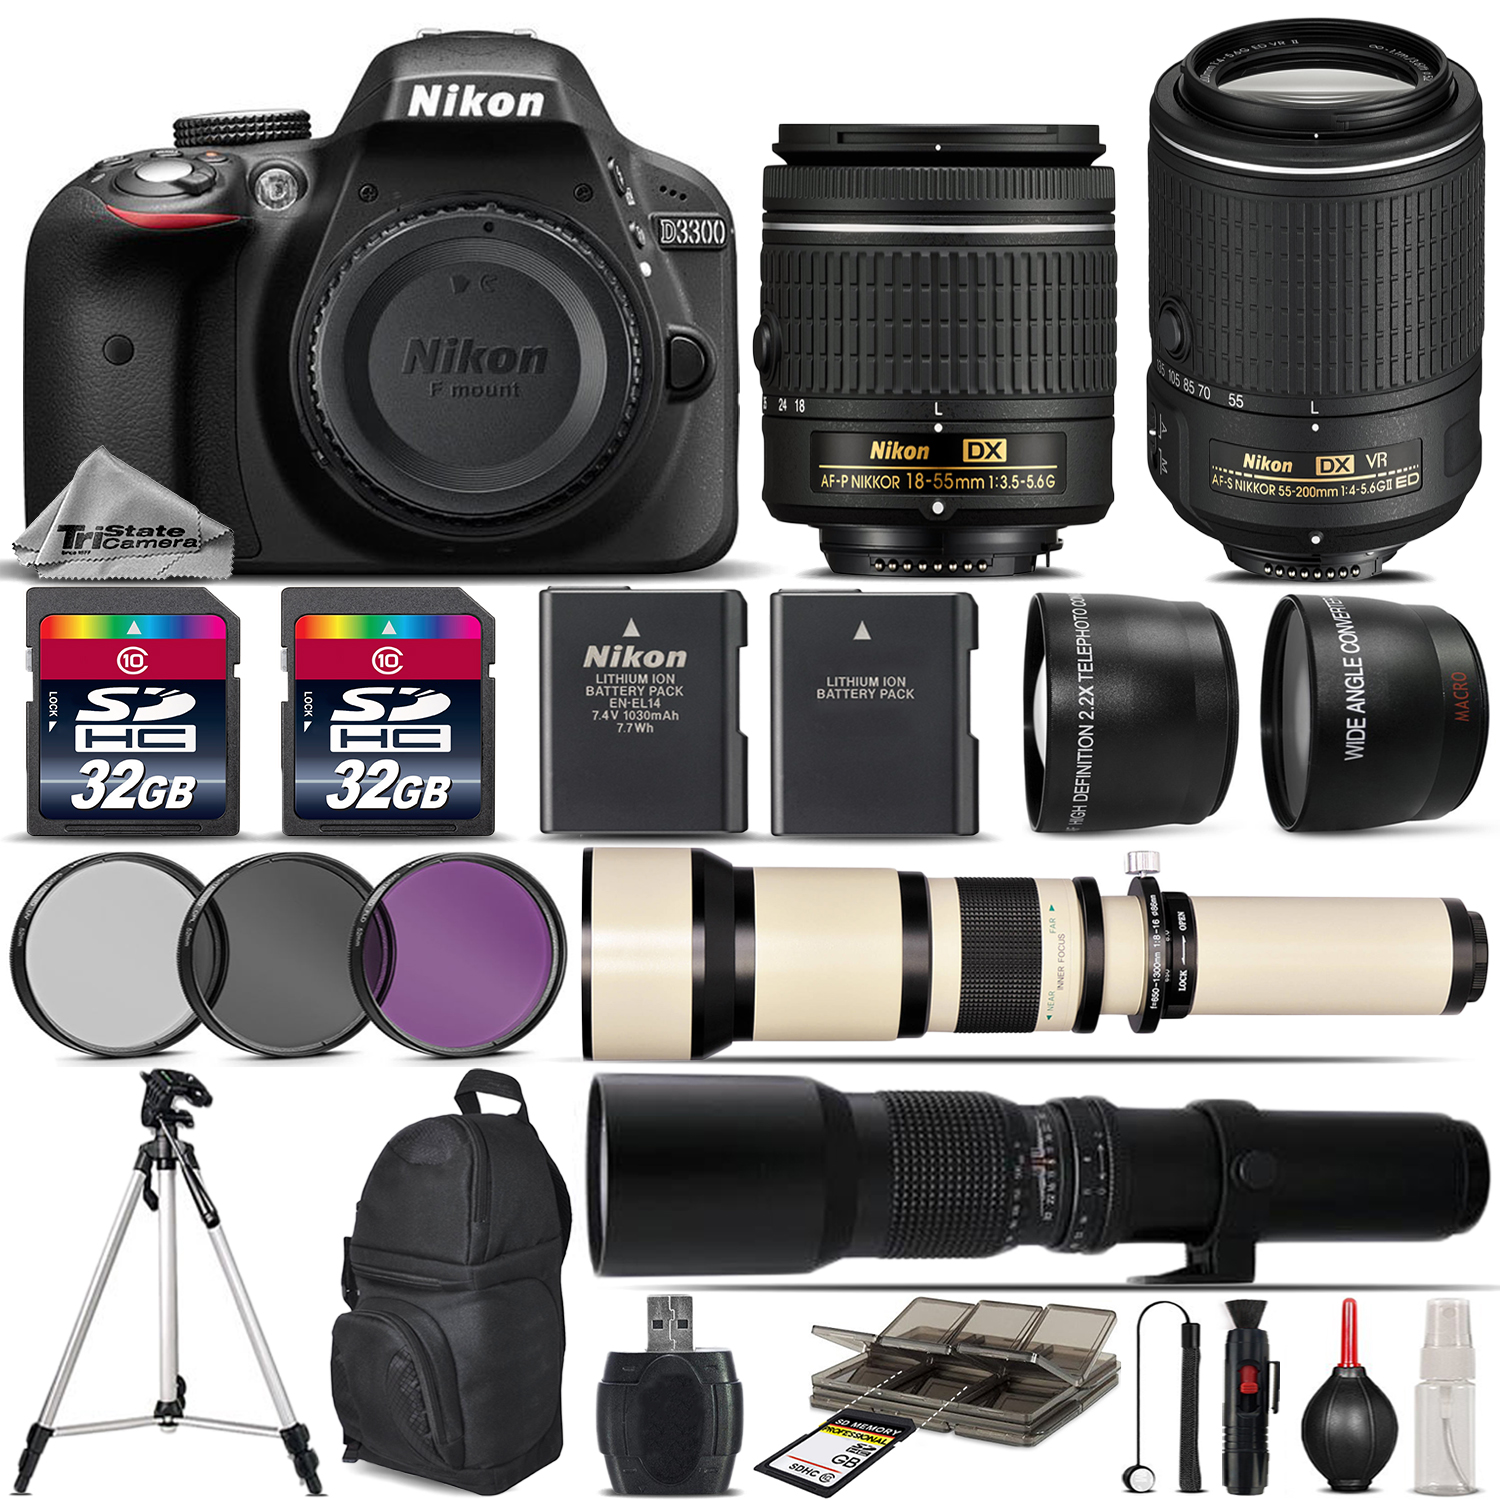 D3300 DSLR Camera + 18-55mm AF P Lens + 55-200mm VR II + 650-1300mm +500mm *FREE SHIPPING*